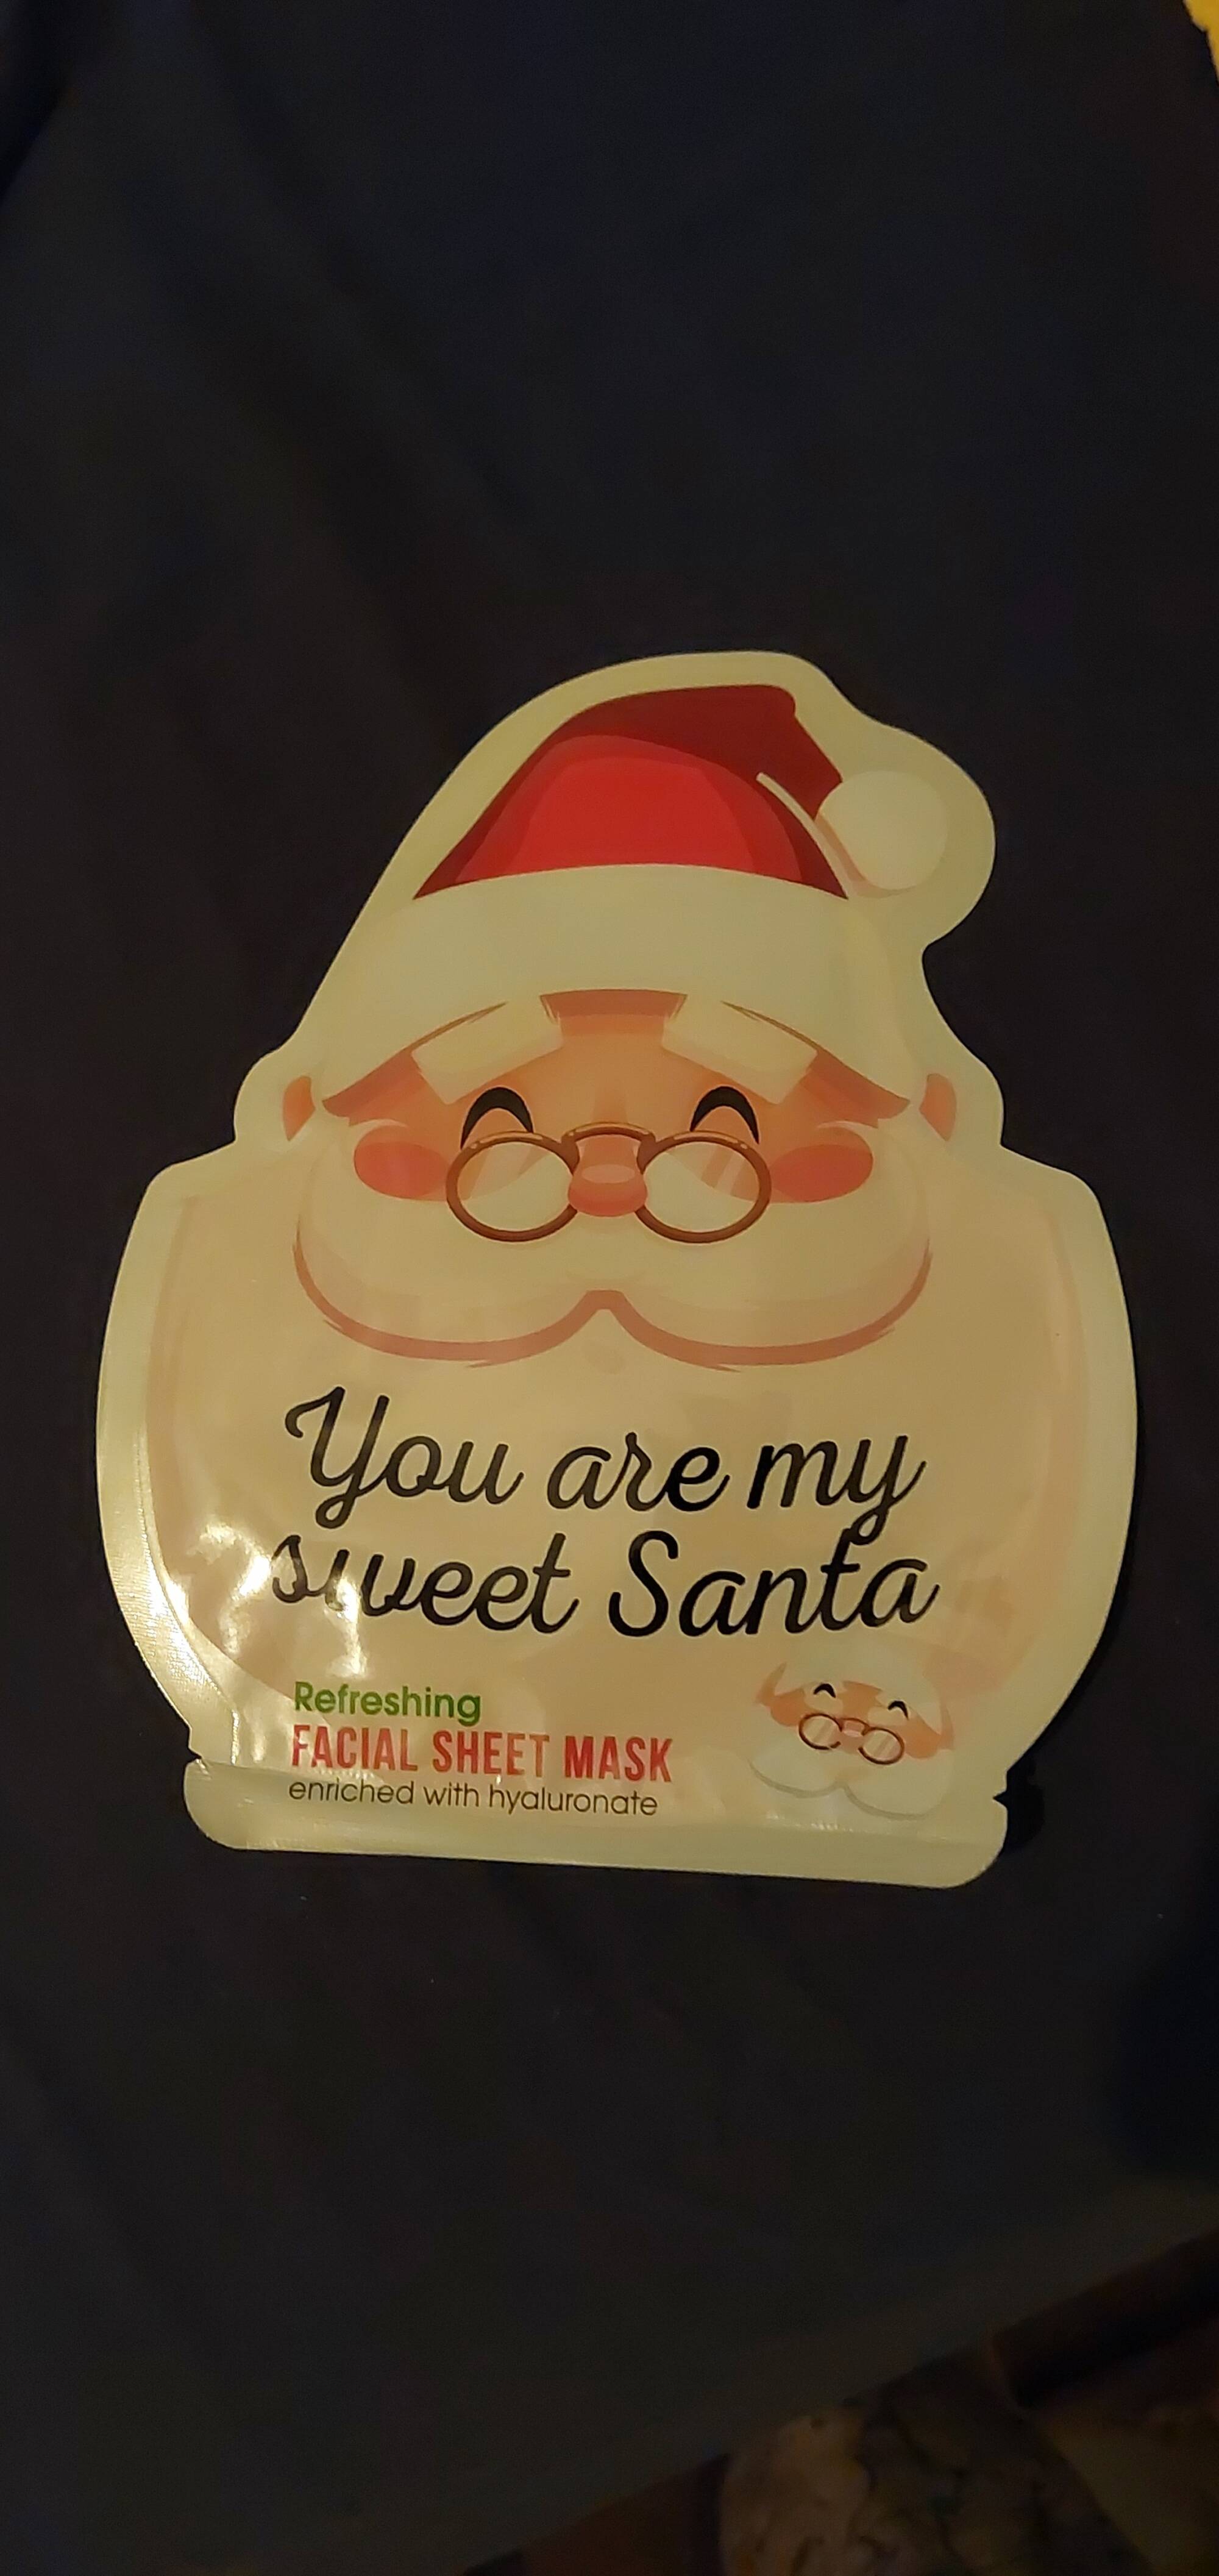 MAXBRANDS - You are my sweet Santa - Facial sheet mask